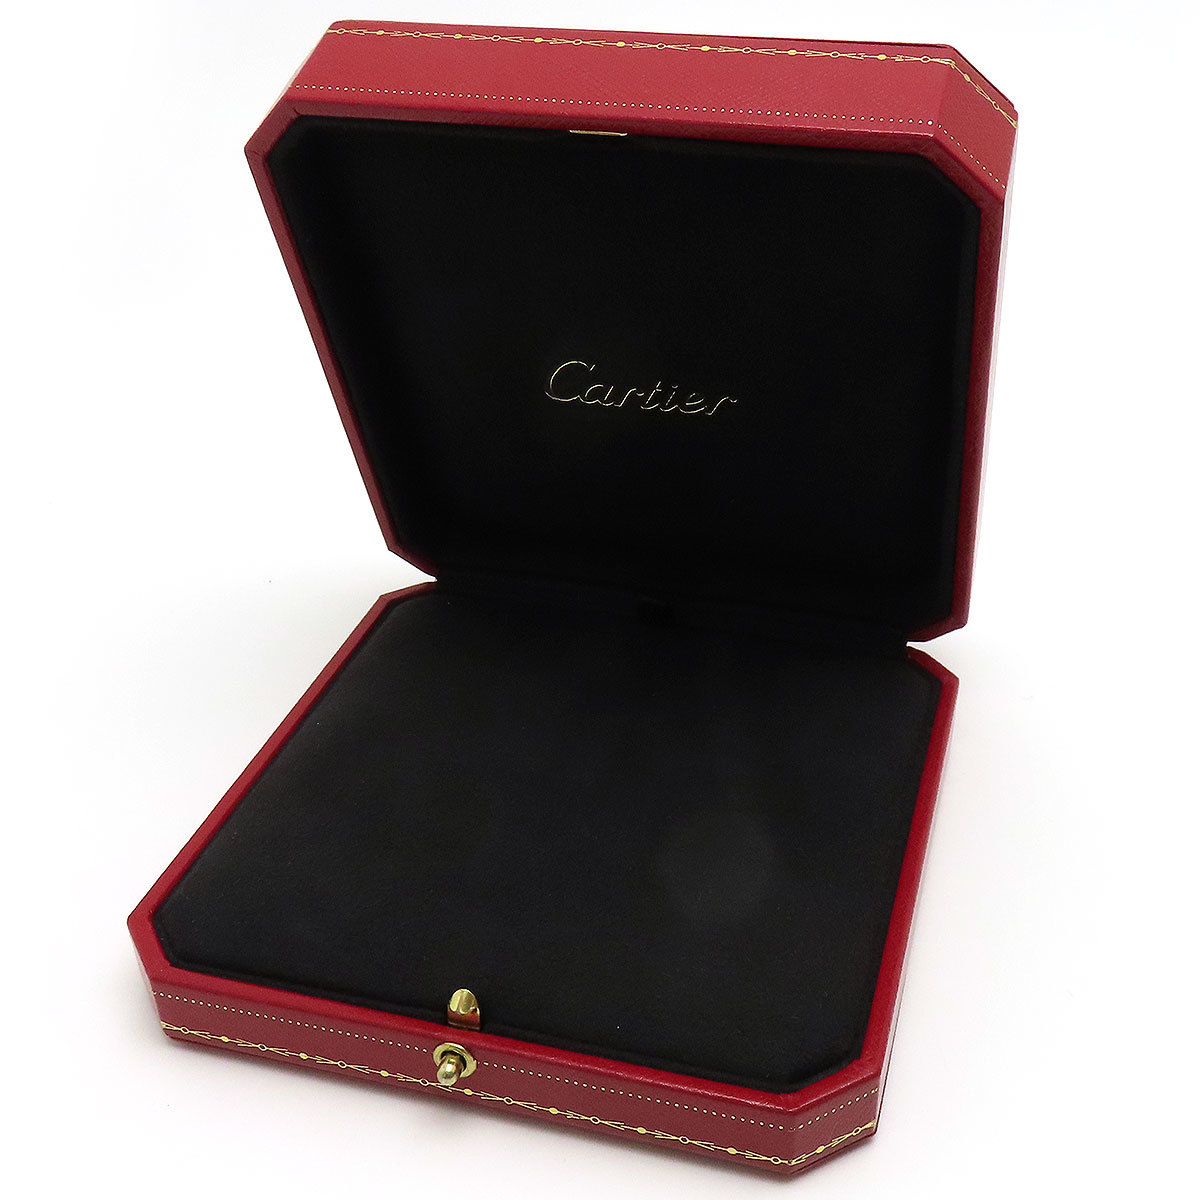  Cartier колье кейс унисекс CARTIER б/у [ ювелирные изделия ]